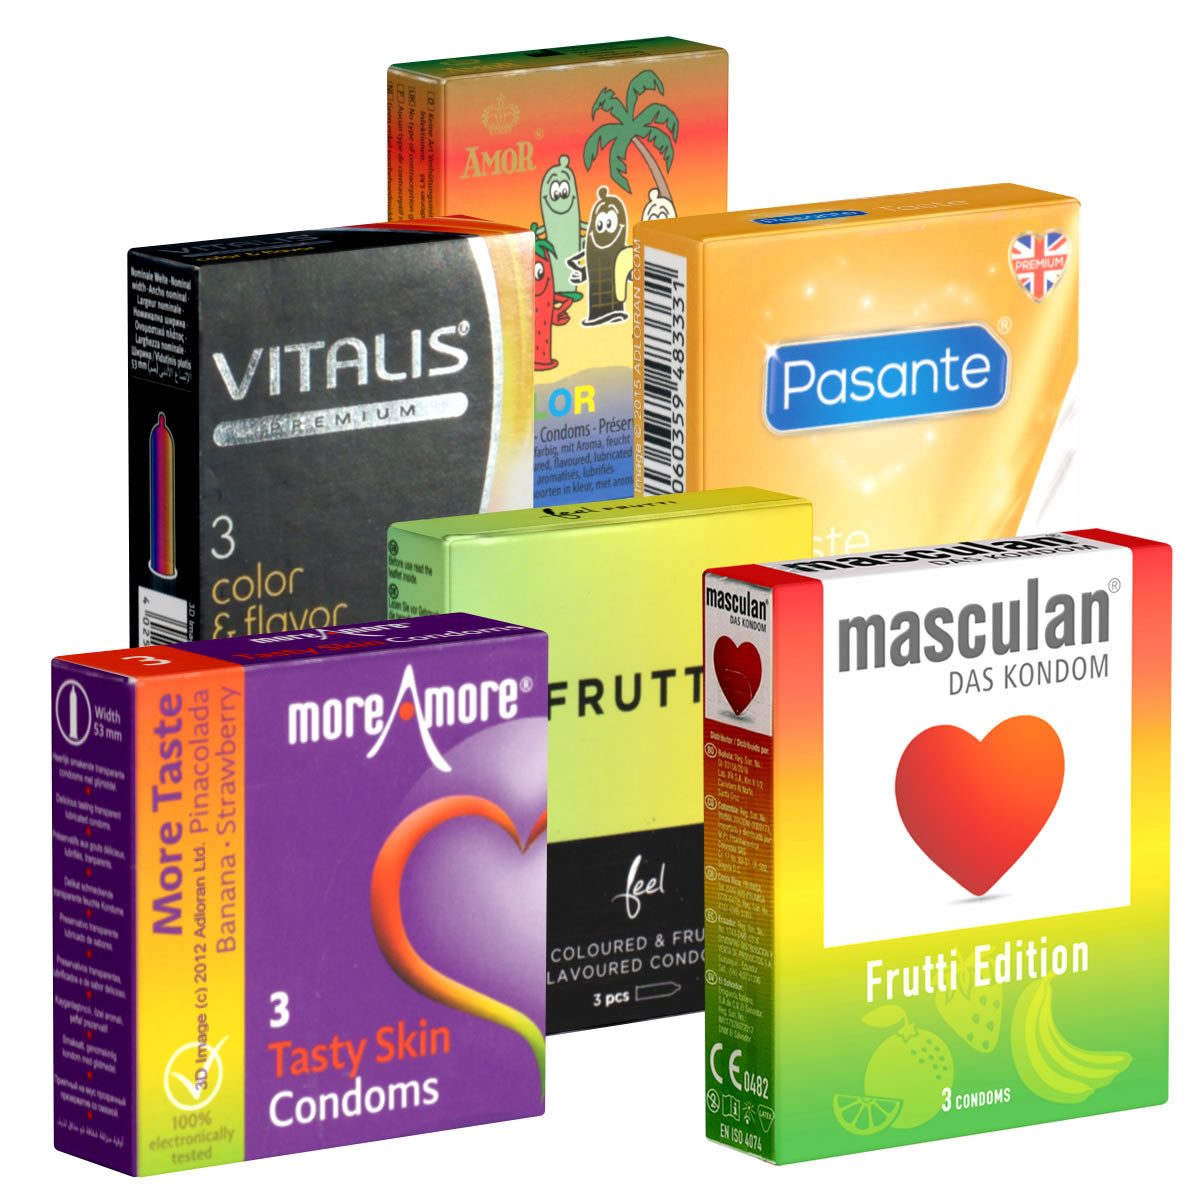 Kondomotheke Kondome Fruity & Tasty SIXPACK 6 Packungen köstliche Kondome, insgesamt, 18 St., aromatisierte Kondome, Kondome mit Geschmack, Probierset, anregend und bunt, fruchtige Aromen, für Genießer empfohlen